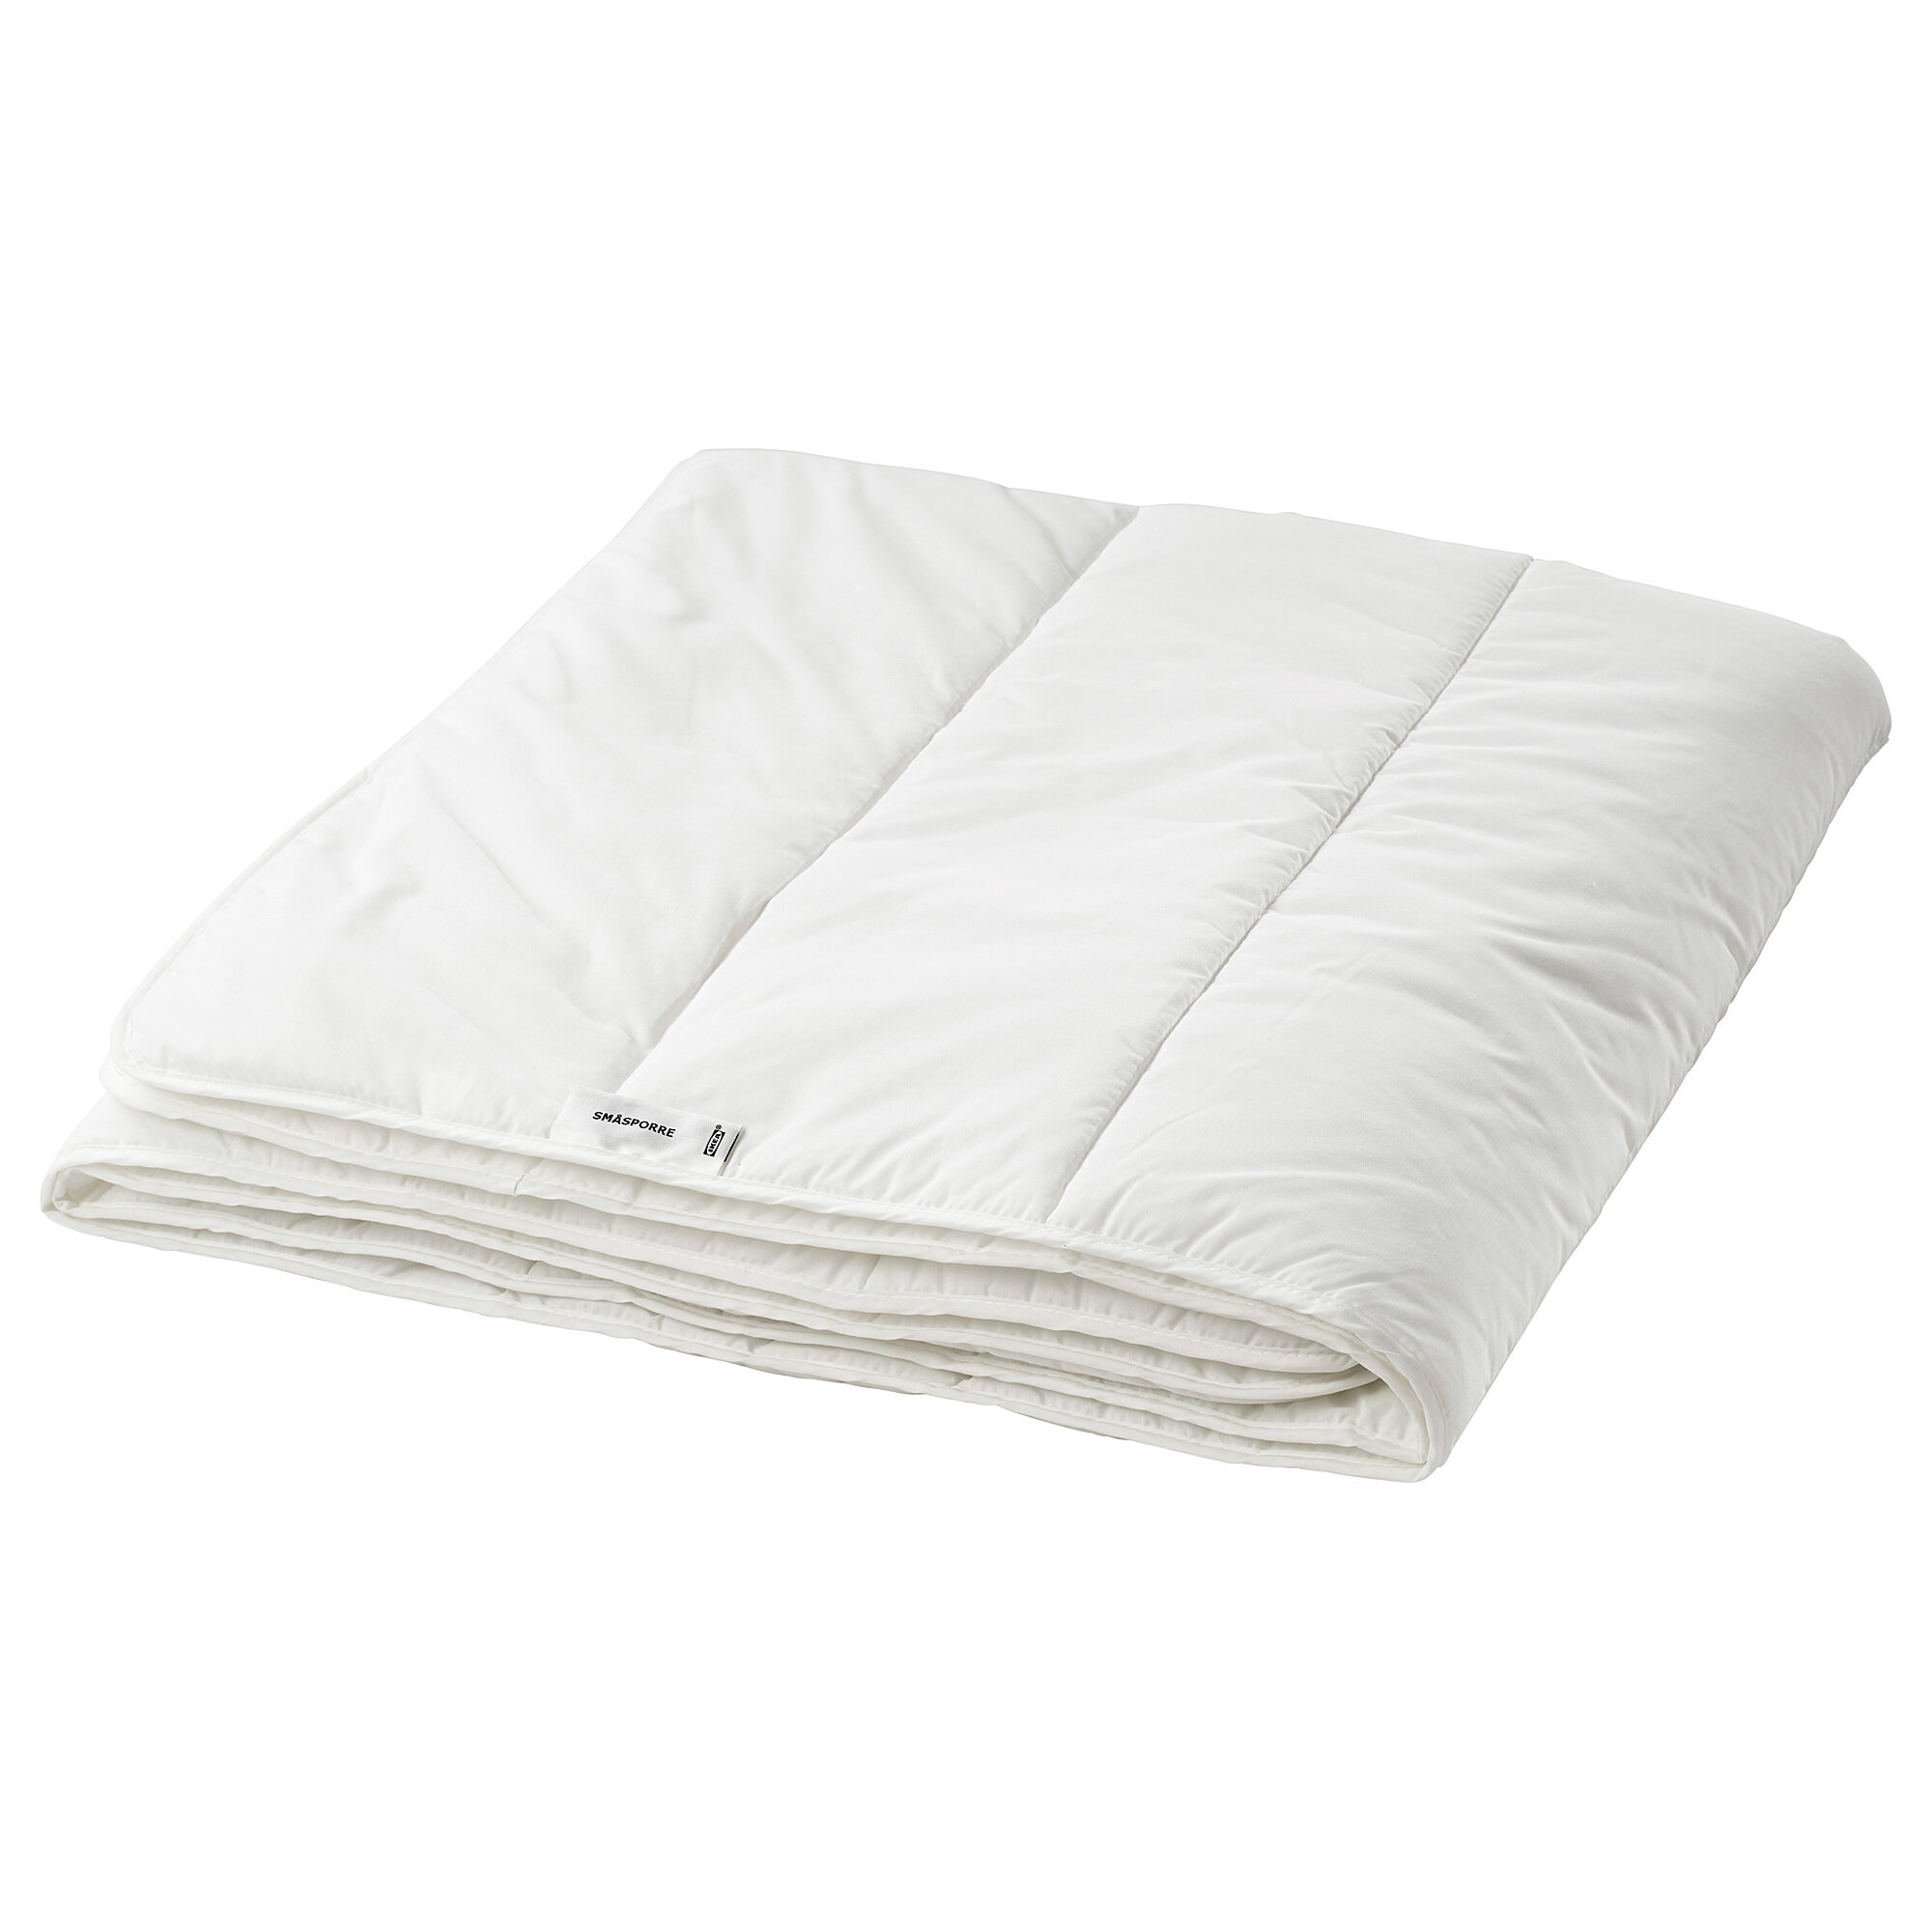 Одеяло икеа смоспорре легкое, 150 х 200 см, белый - фотография № 1